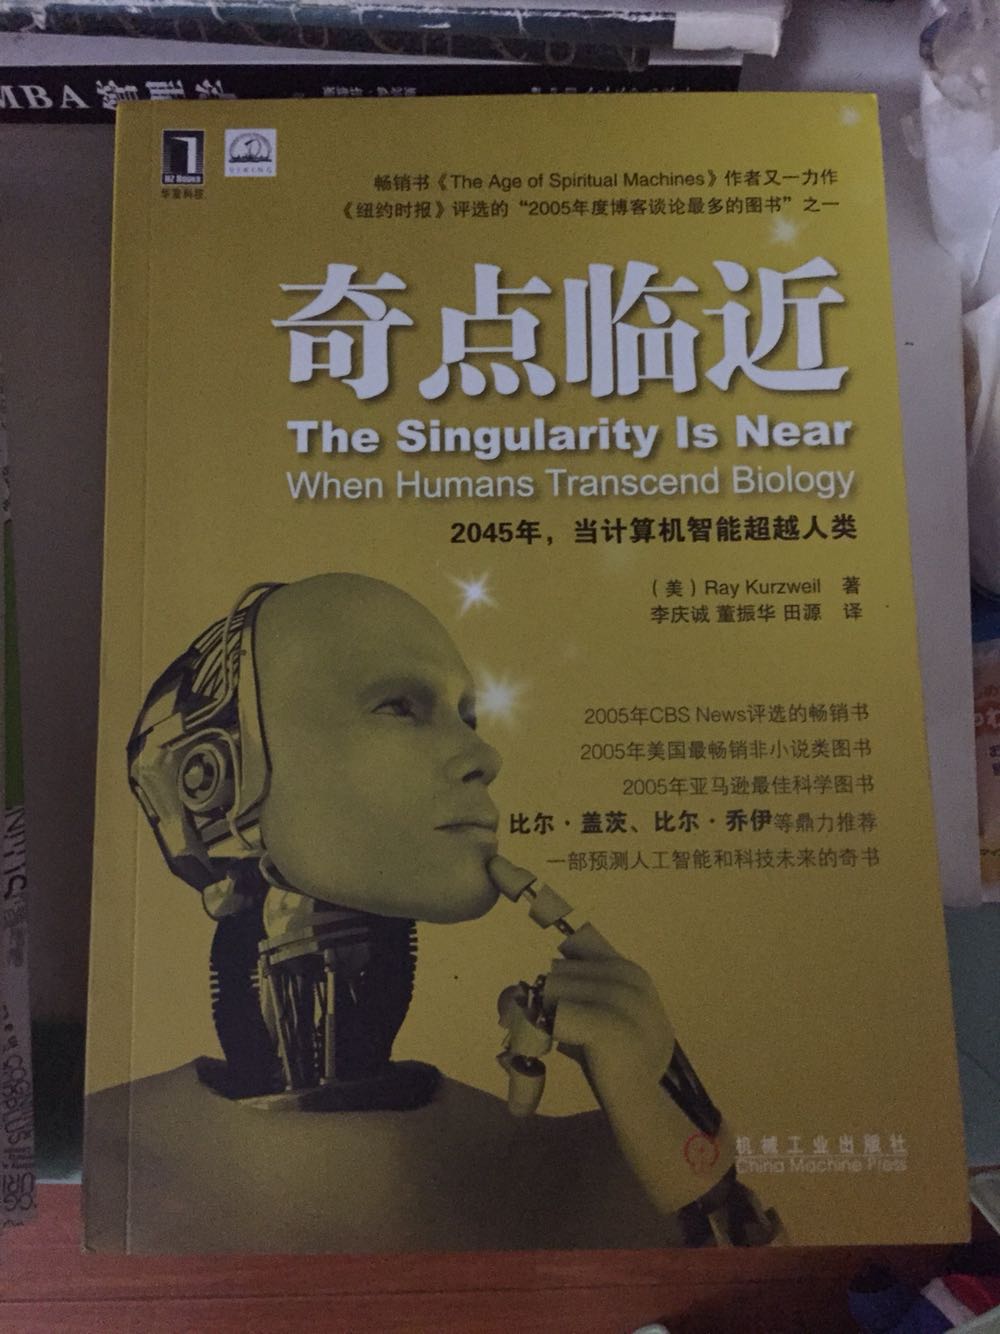 朋友推荐关于人工智能的书